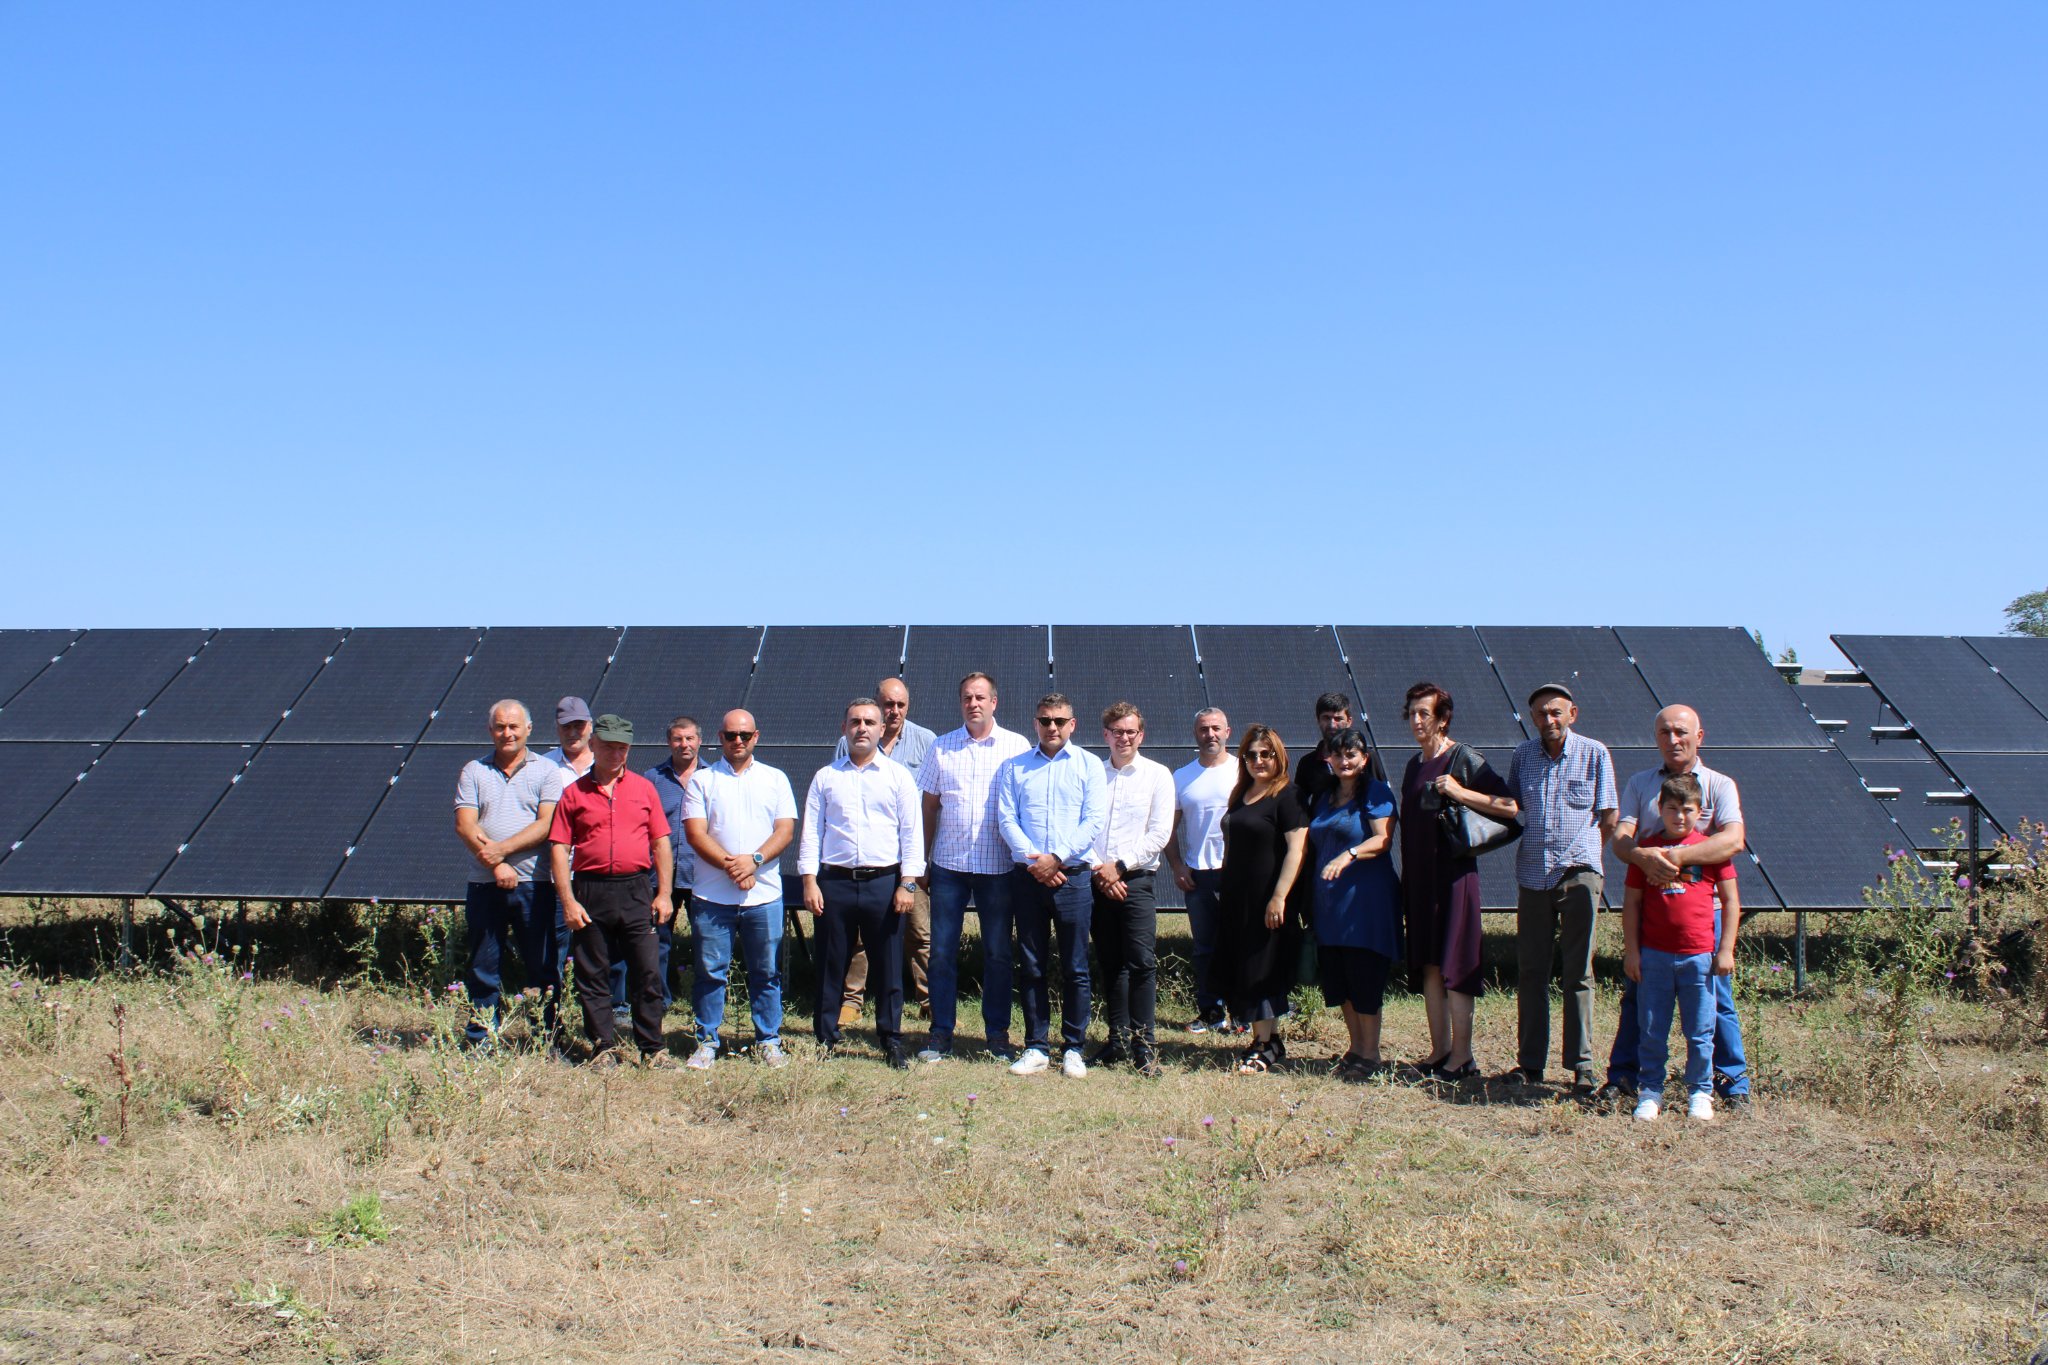 2022 წლის 17 აგვისტოს შიდა ქართლში მზის ელექტროსადგურის პროექტის ფარგლებში, ვიზიტით იმყოფებოდნენ ლიეტუვური ორგანიზაცია “სოლეტ ტექნიკსისა” და ქართული კომპანია შპს “მზის სახლის” წარმომადგენლები.